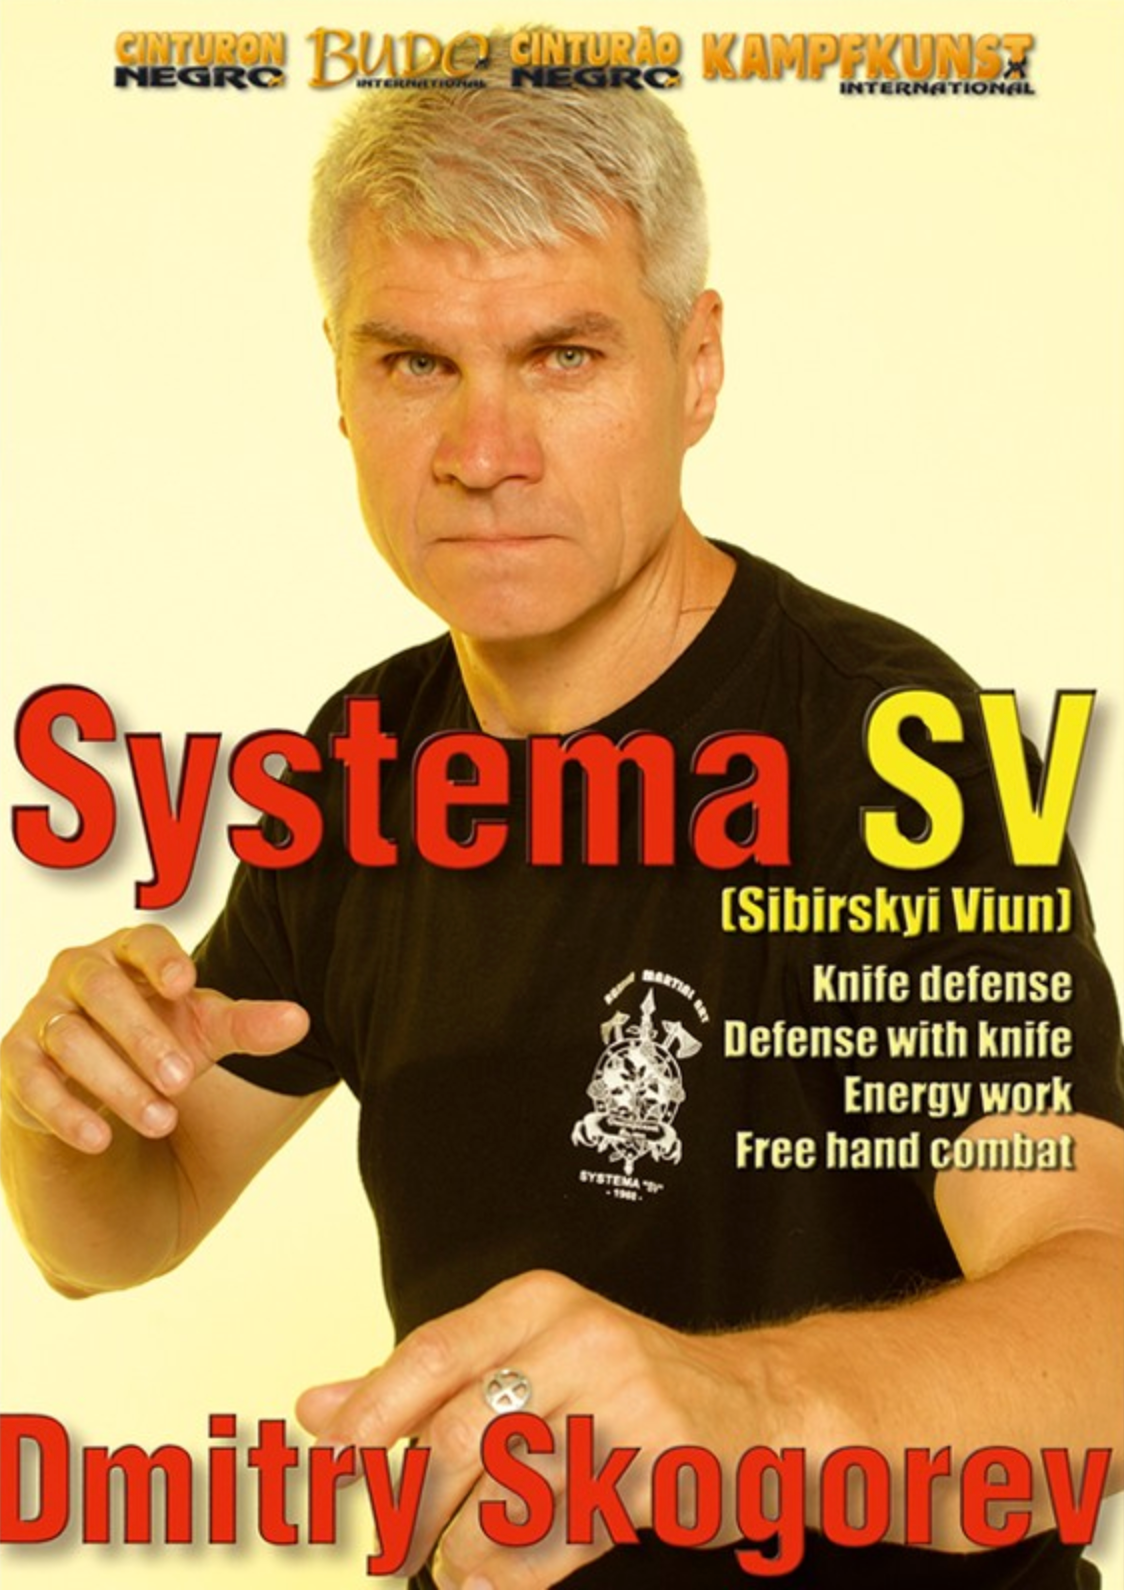 RMA Systema SV Empty Hands & Knife DVD with Dmitry Skogorev - Budovideos Inc